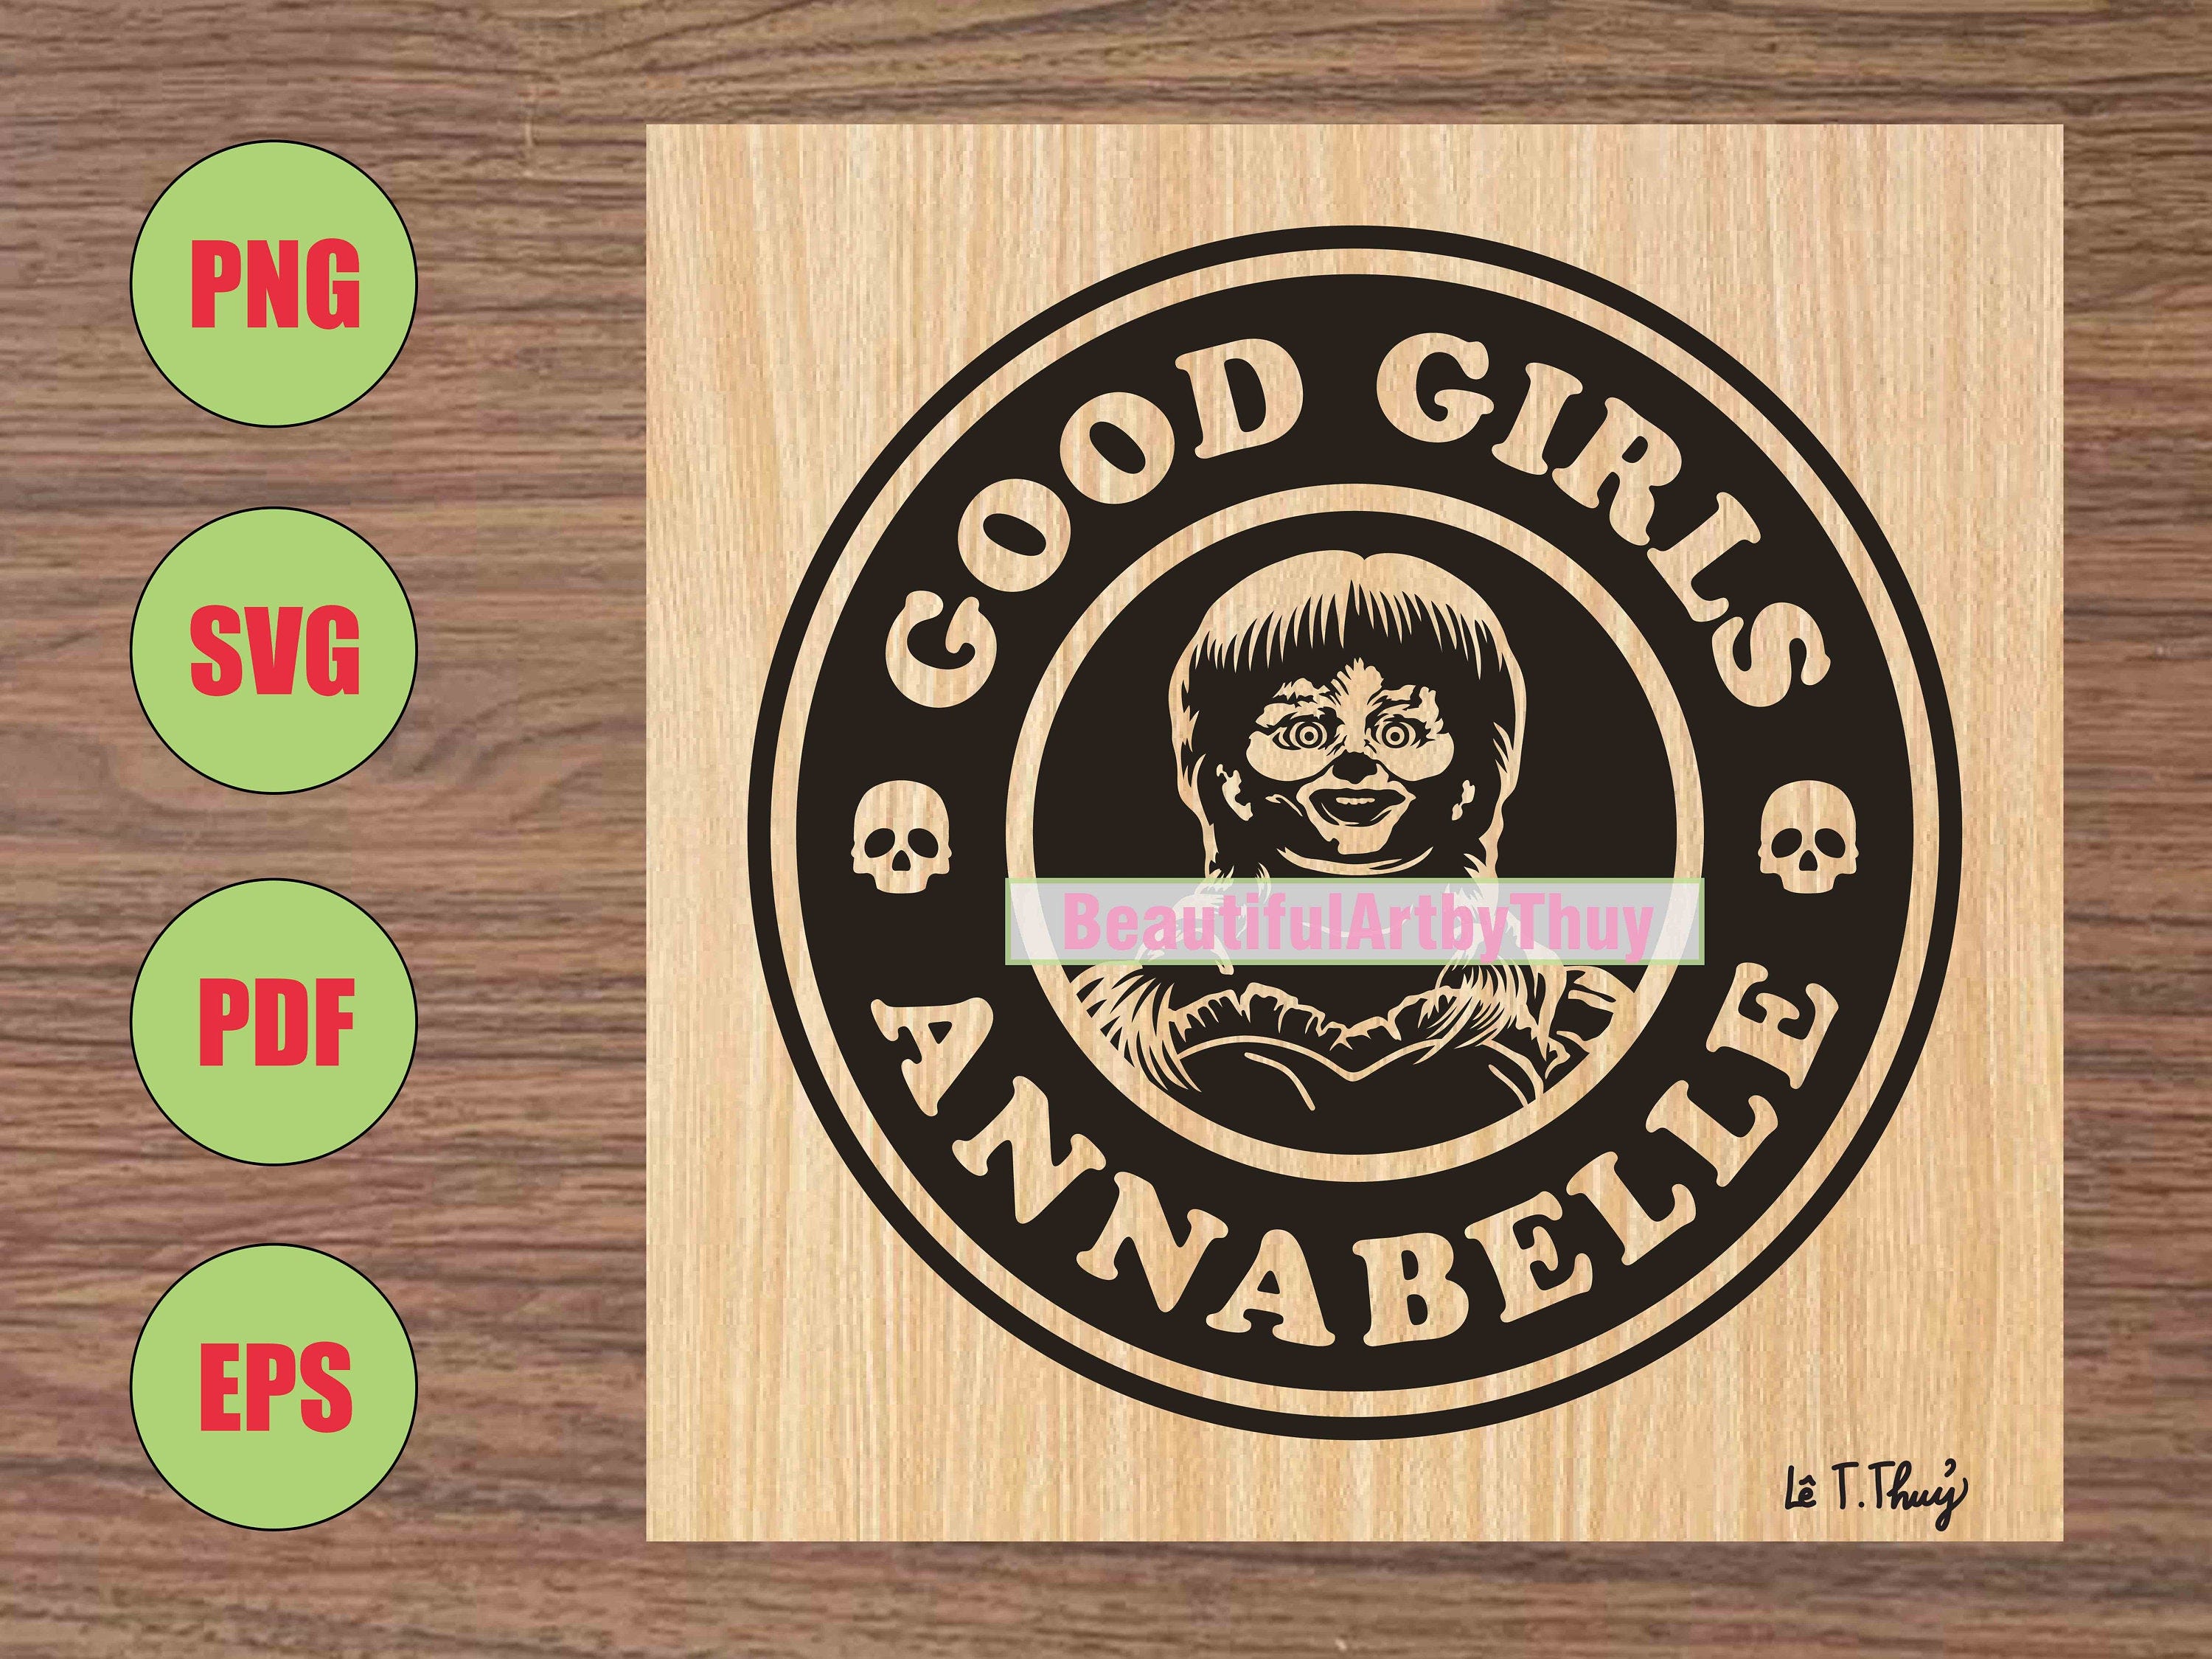 Annabelle Starbucks Inspired SVG, Good Girls Annabelle, Horror Movie Character SVG, Halloween Doll Killer, For Sublimation, For Cricut